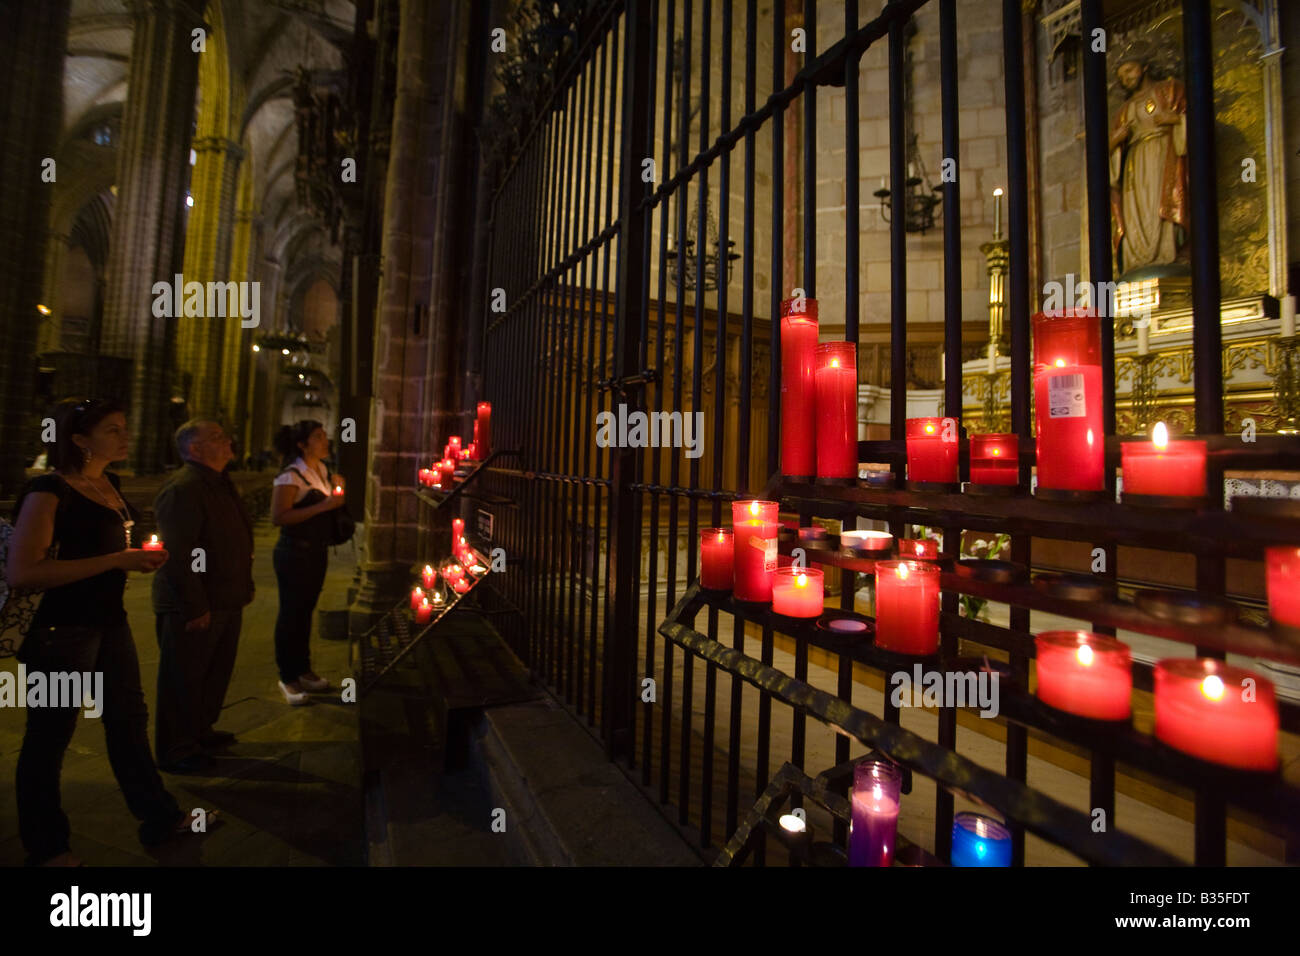 Spanien Barcelona viele rote votive Kerzen angezündet, bevor Kapelle drei Kerzen Innenraum der Kathedrale von Barcelona Gothic Personen Stockfoto